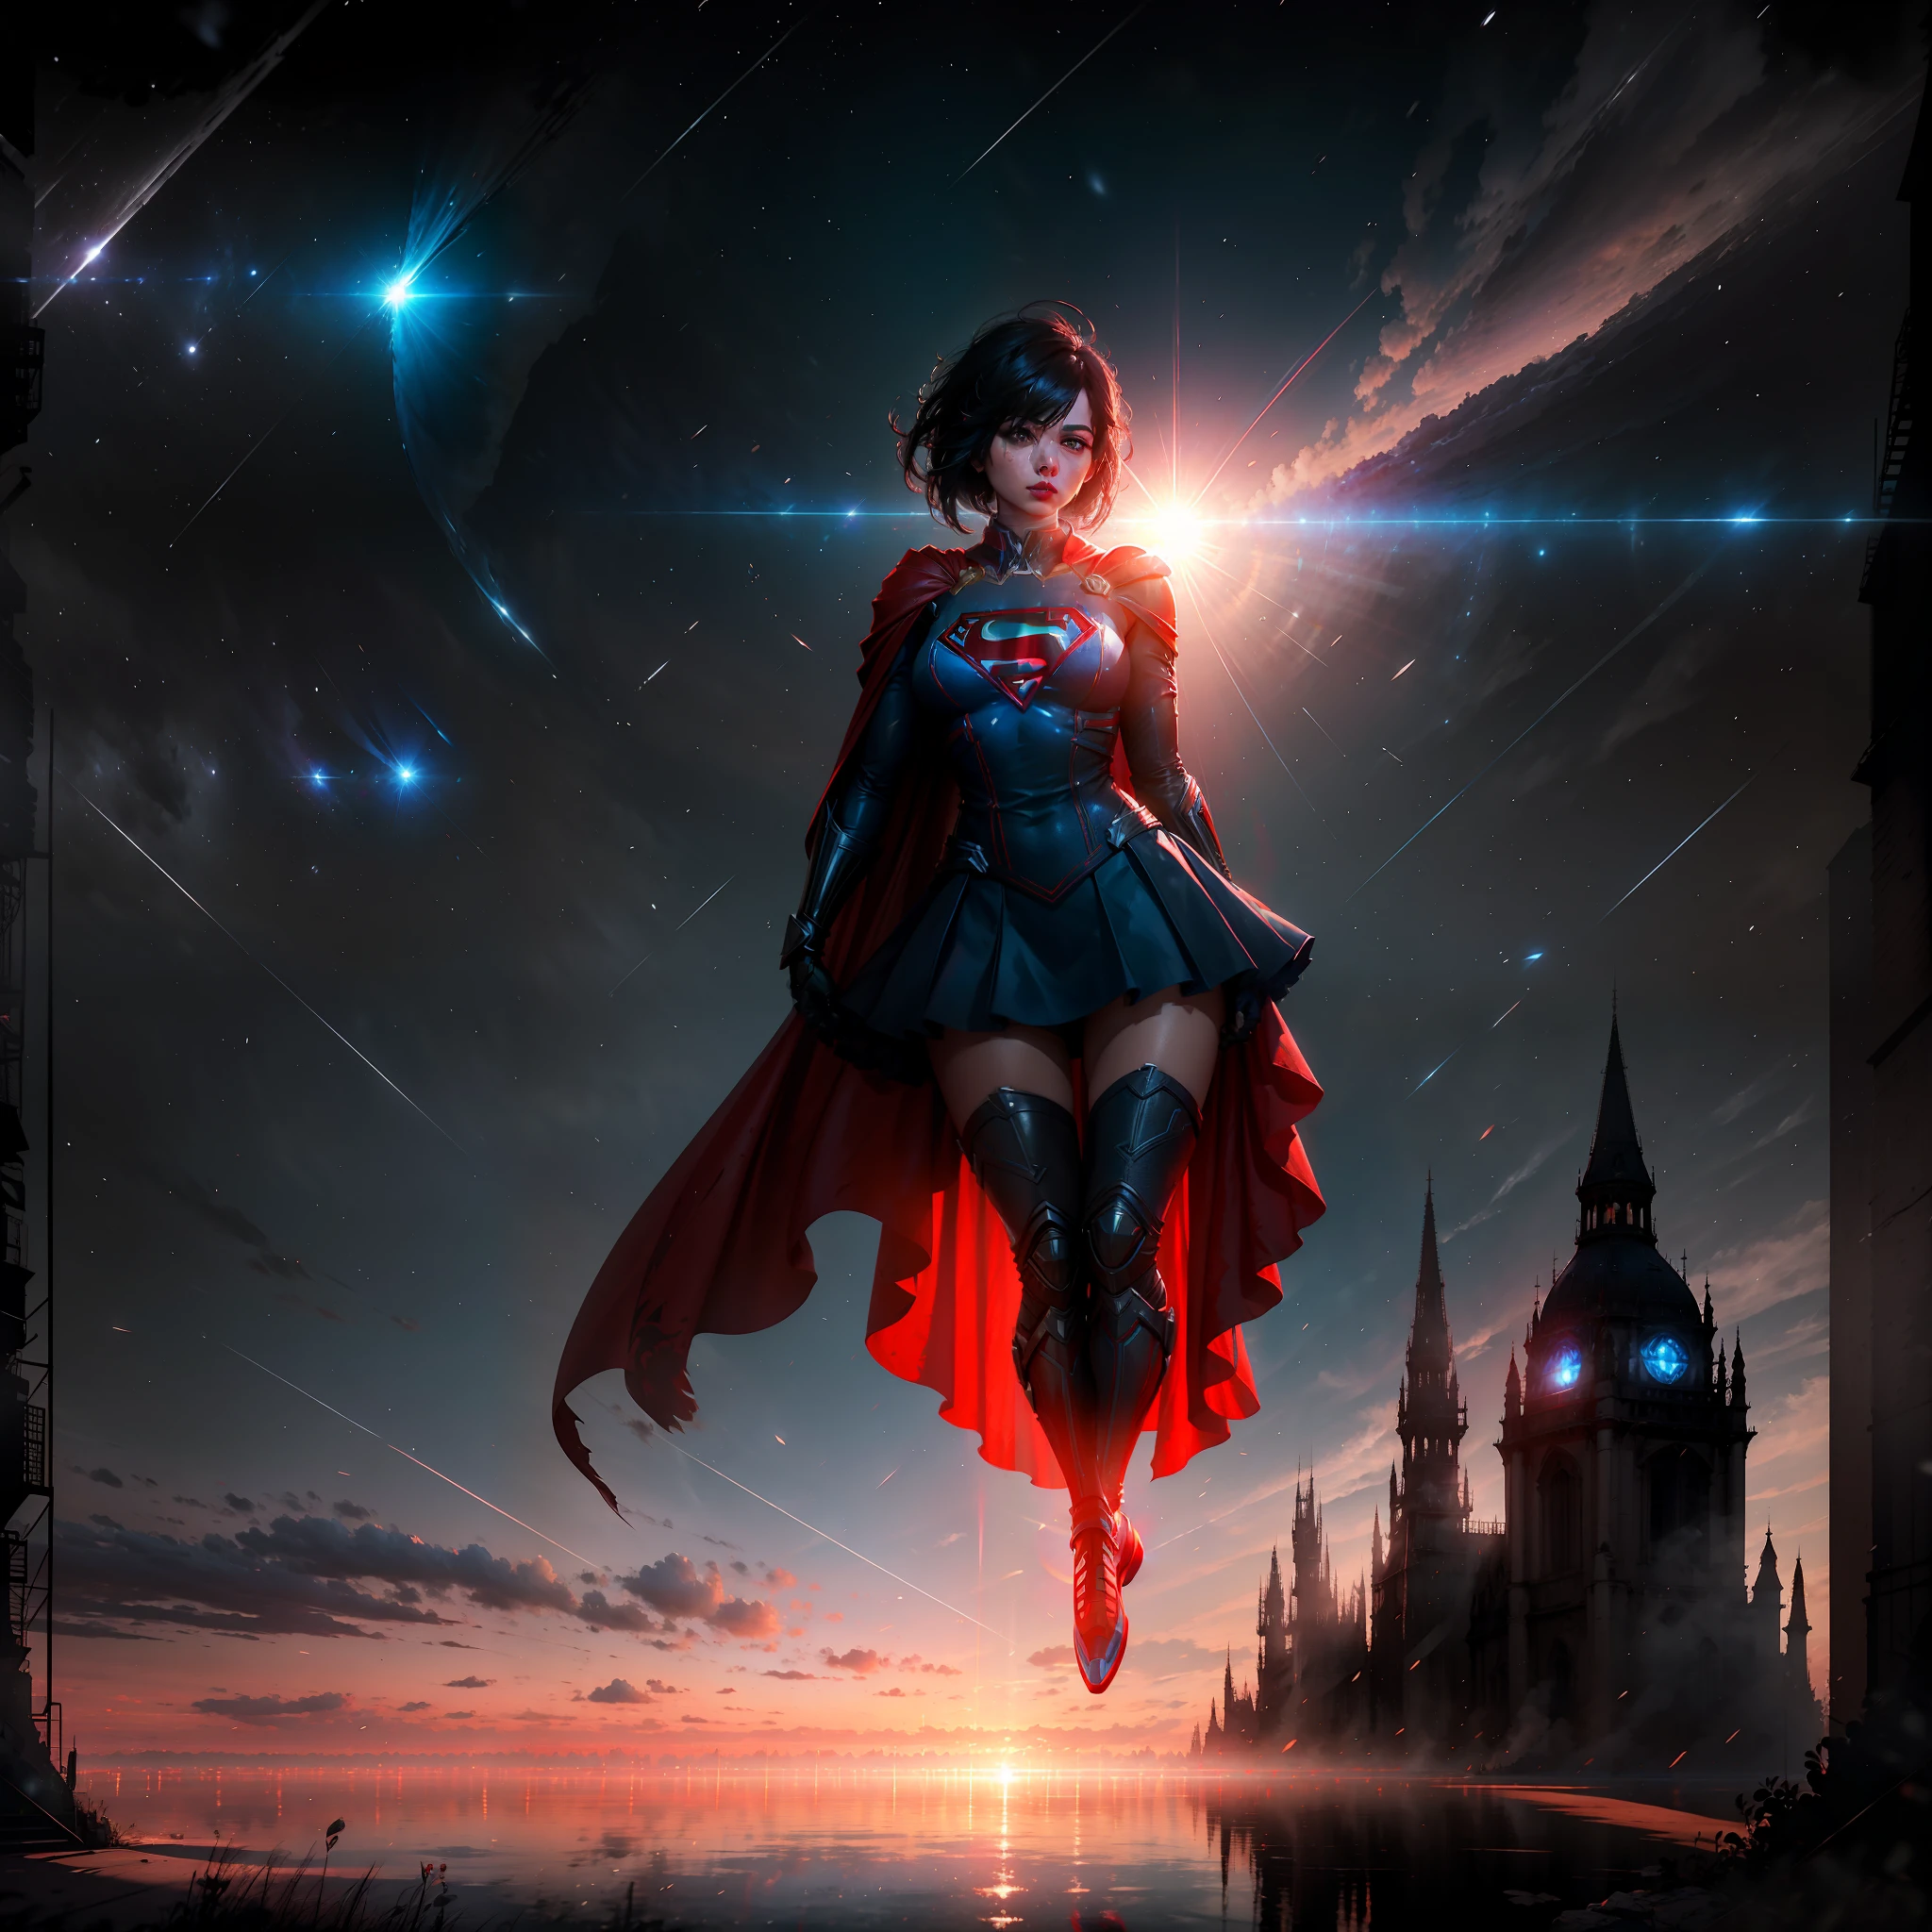 Supergirl, mulher adulta com cabelo preto curto, cosplay de supergirl, flutuando no ar, longa capa vermelha nas costas, rosto perfeito e lindo, Motor irreal 5, 8K.